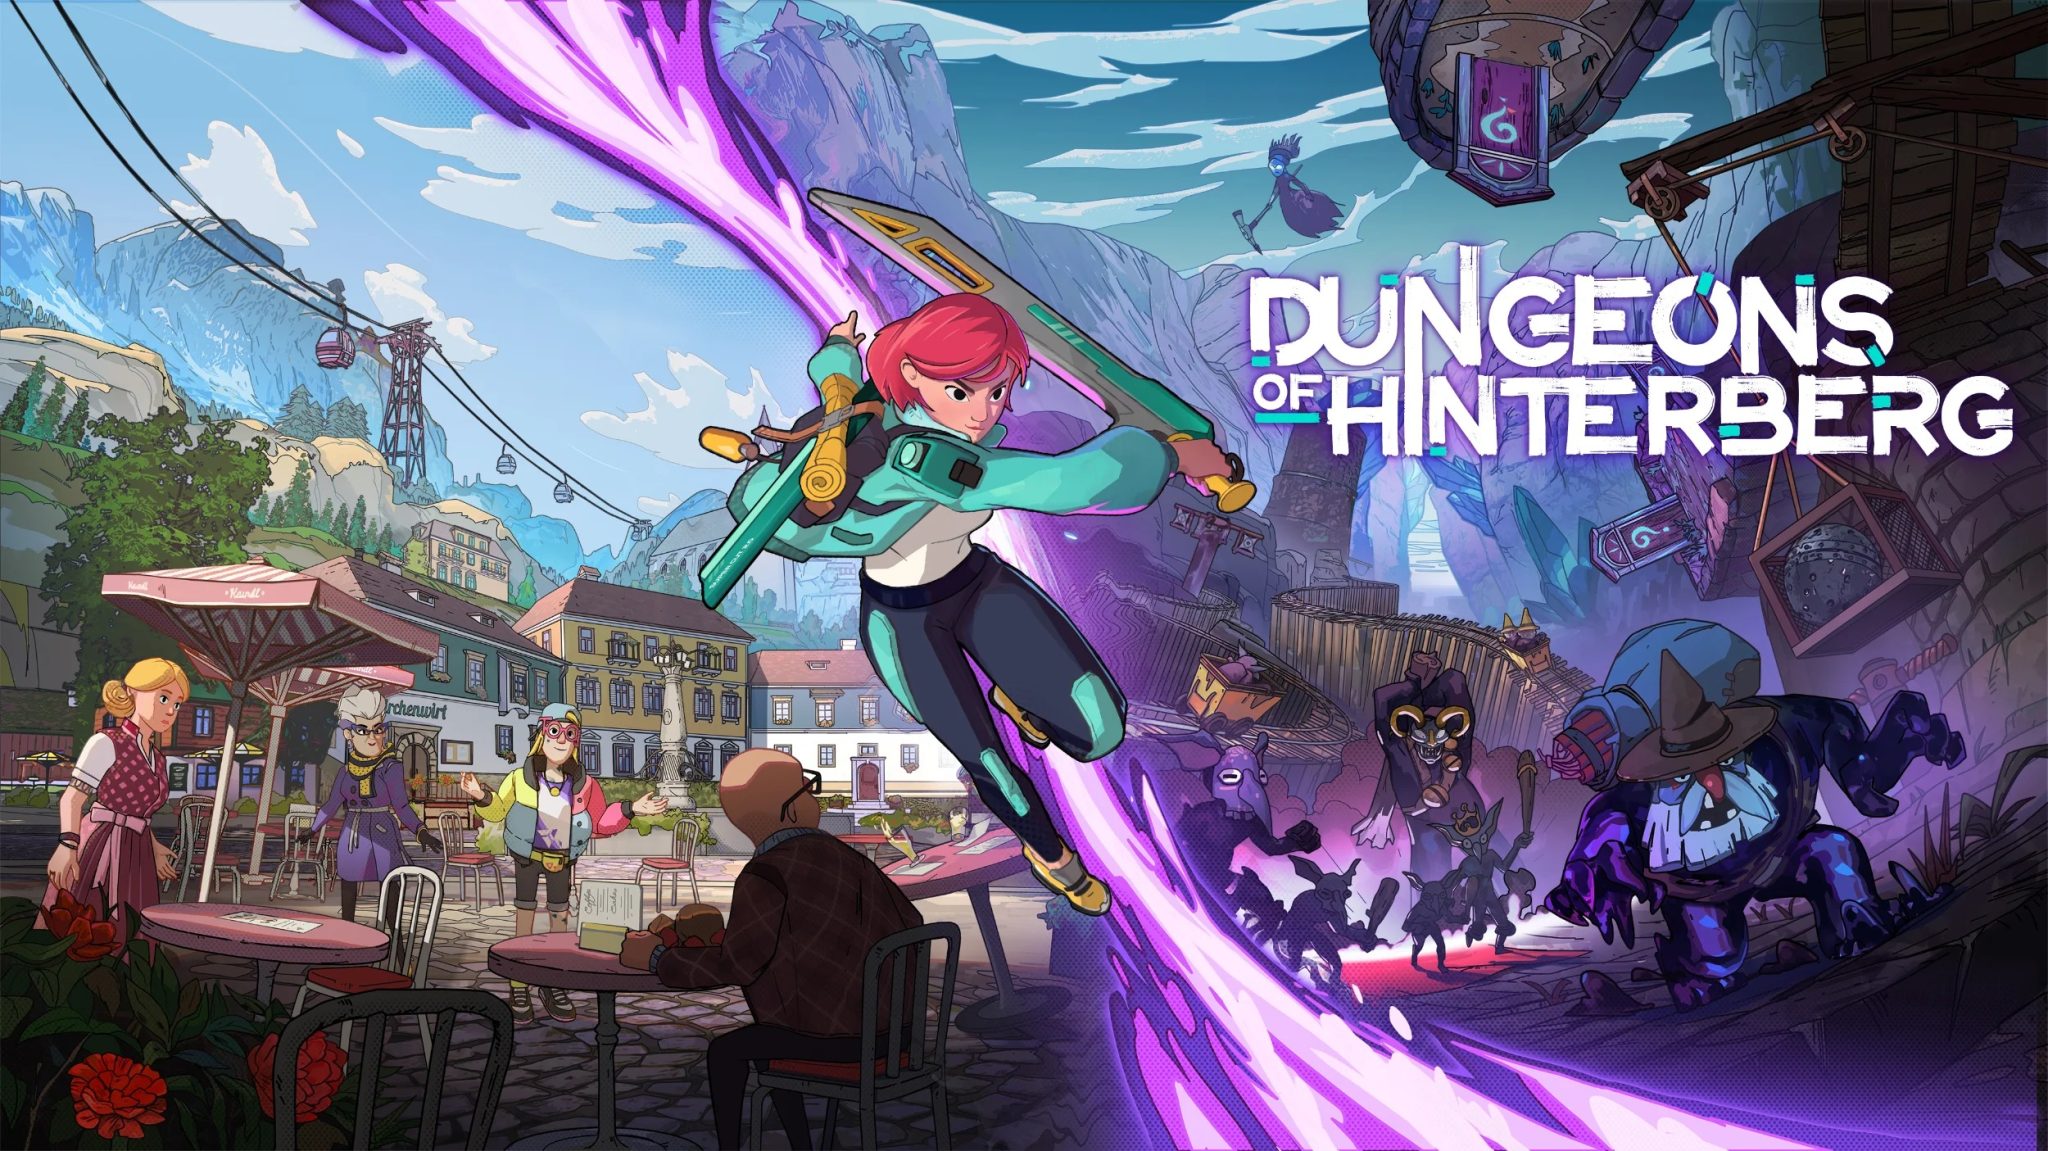 Es ist offiziell: Dungeons of Hinterberg wird am 18. Juli veröffentlicht